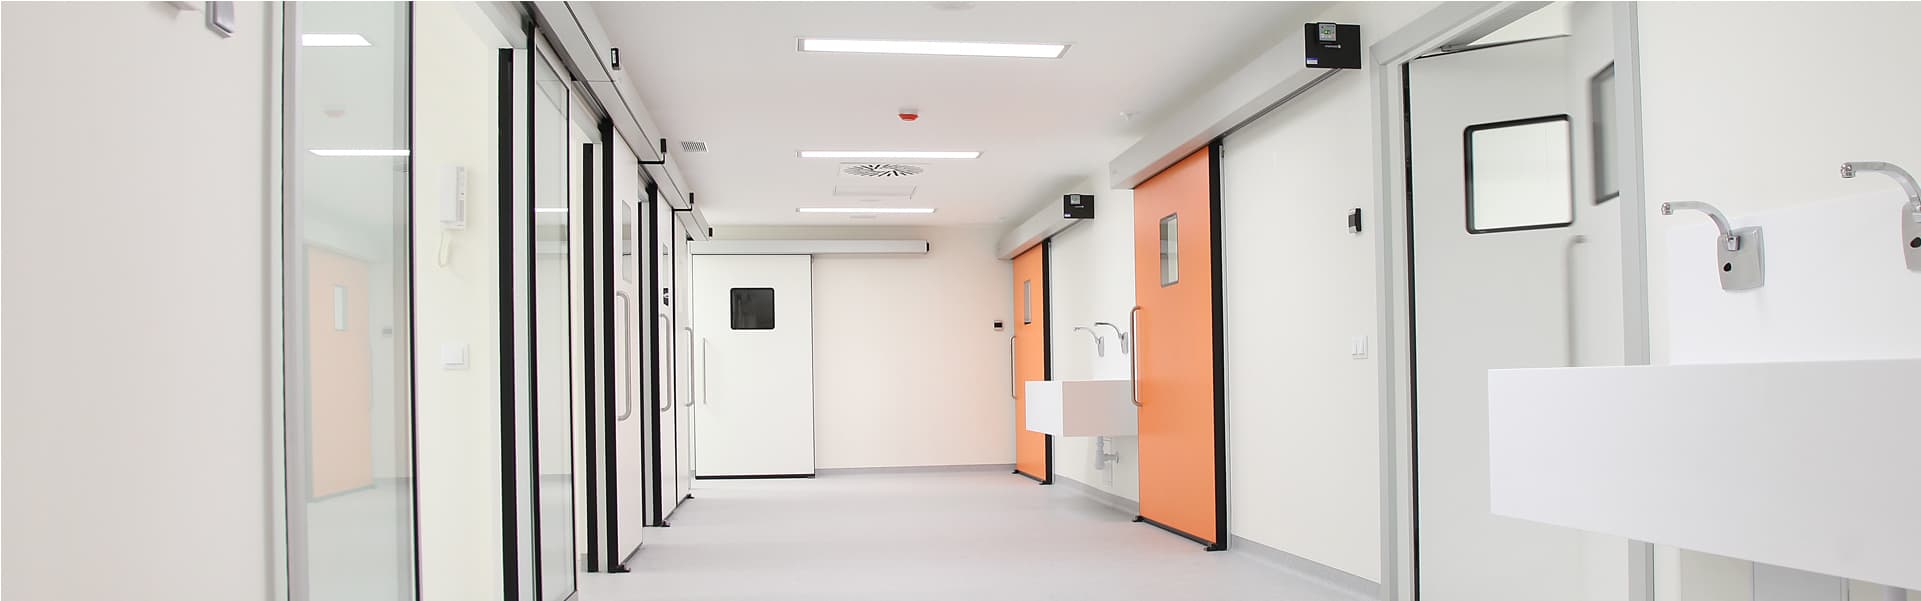 laboratorio puertas automaticas lab automatic door